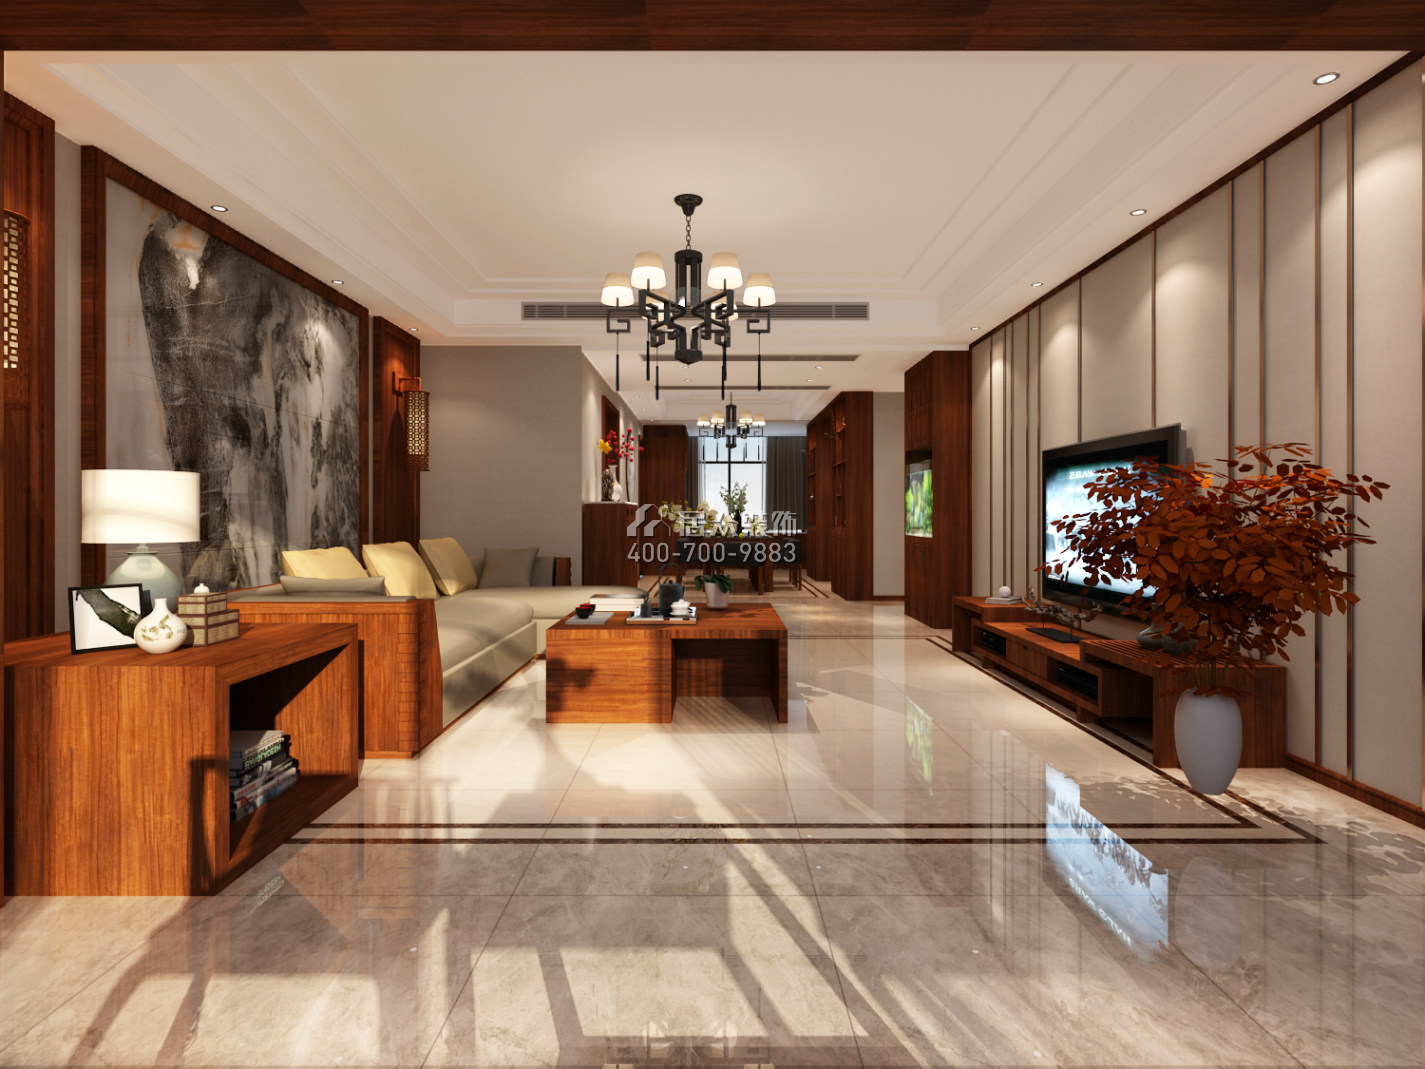 章誉苑171平方米中式风格平层户型客厅装修效果图